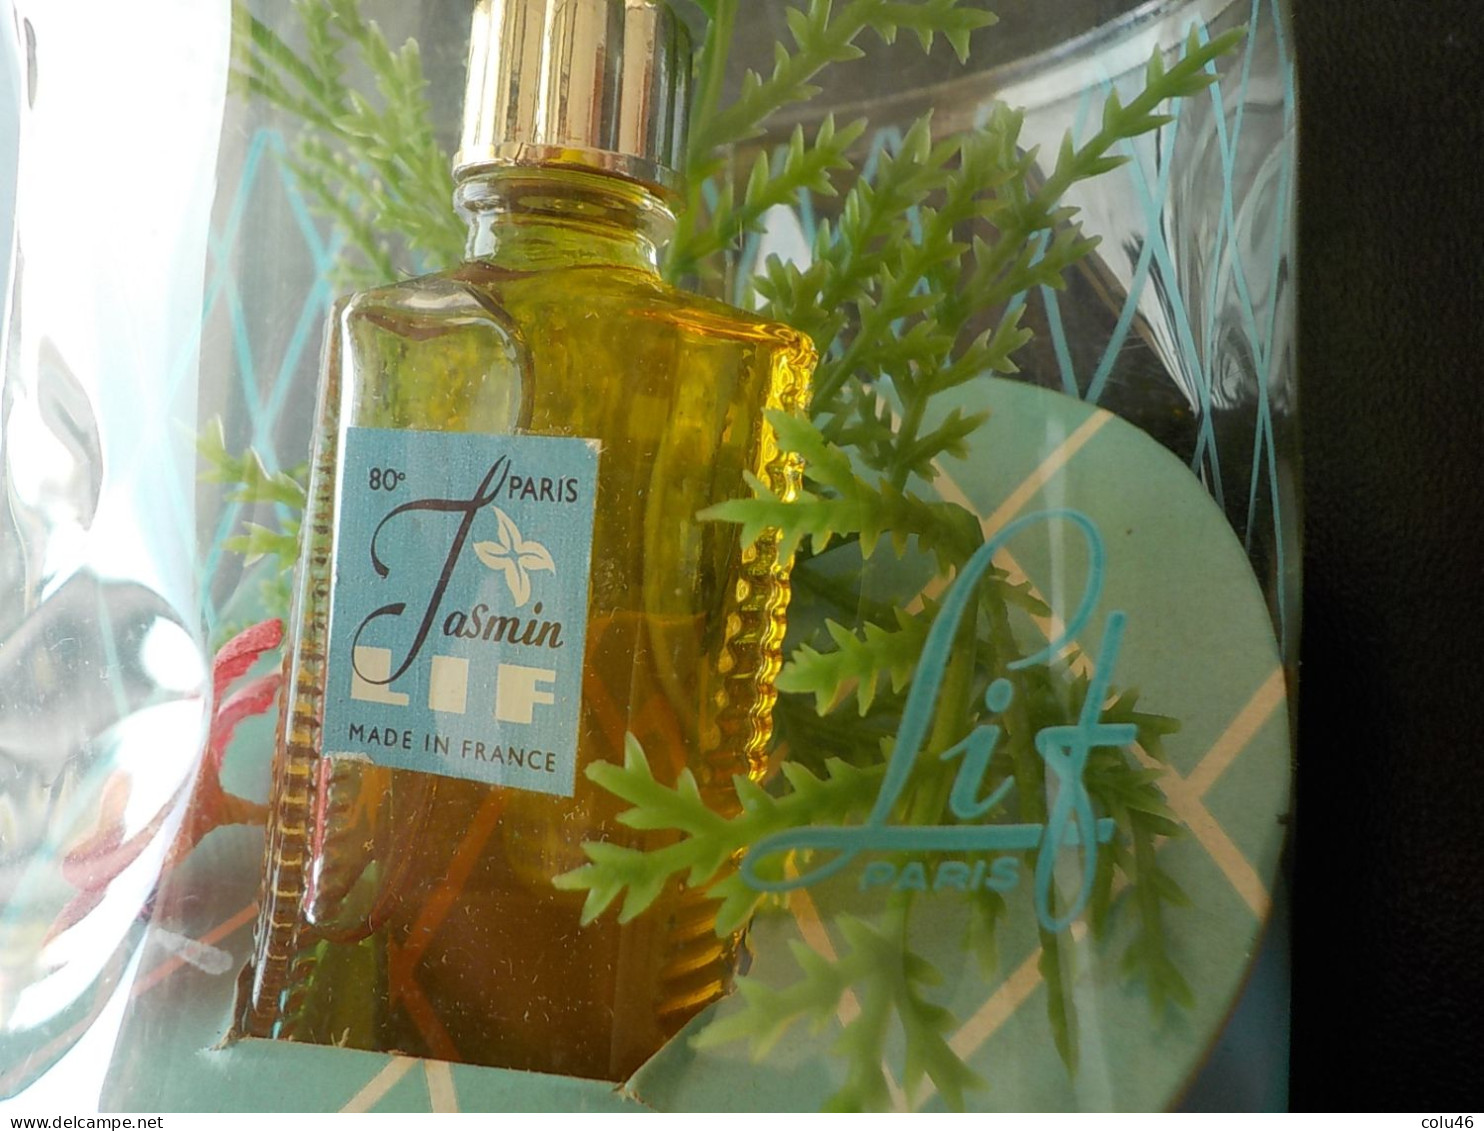 ancienne miniature de parfum dans boîte transparente avec fleur végétation Jasmin de Lif France